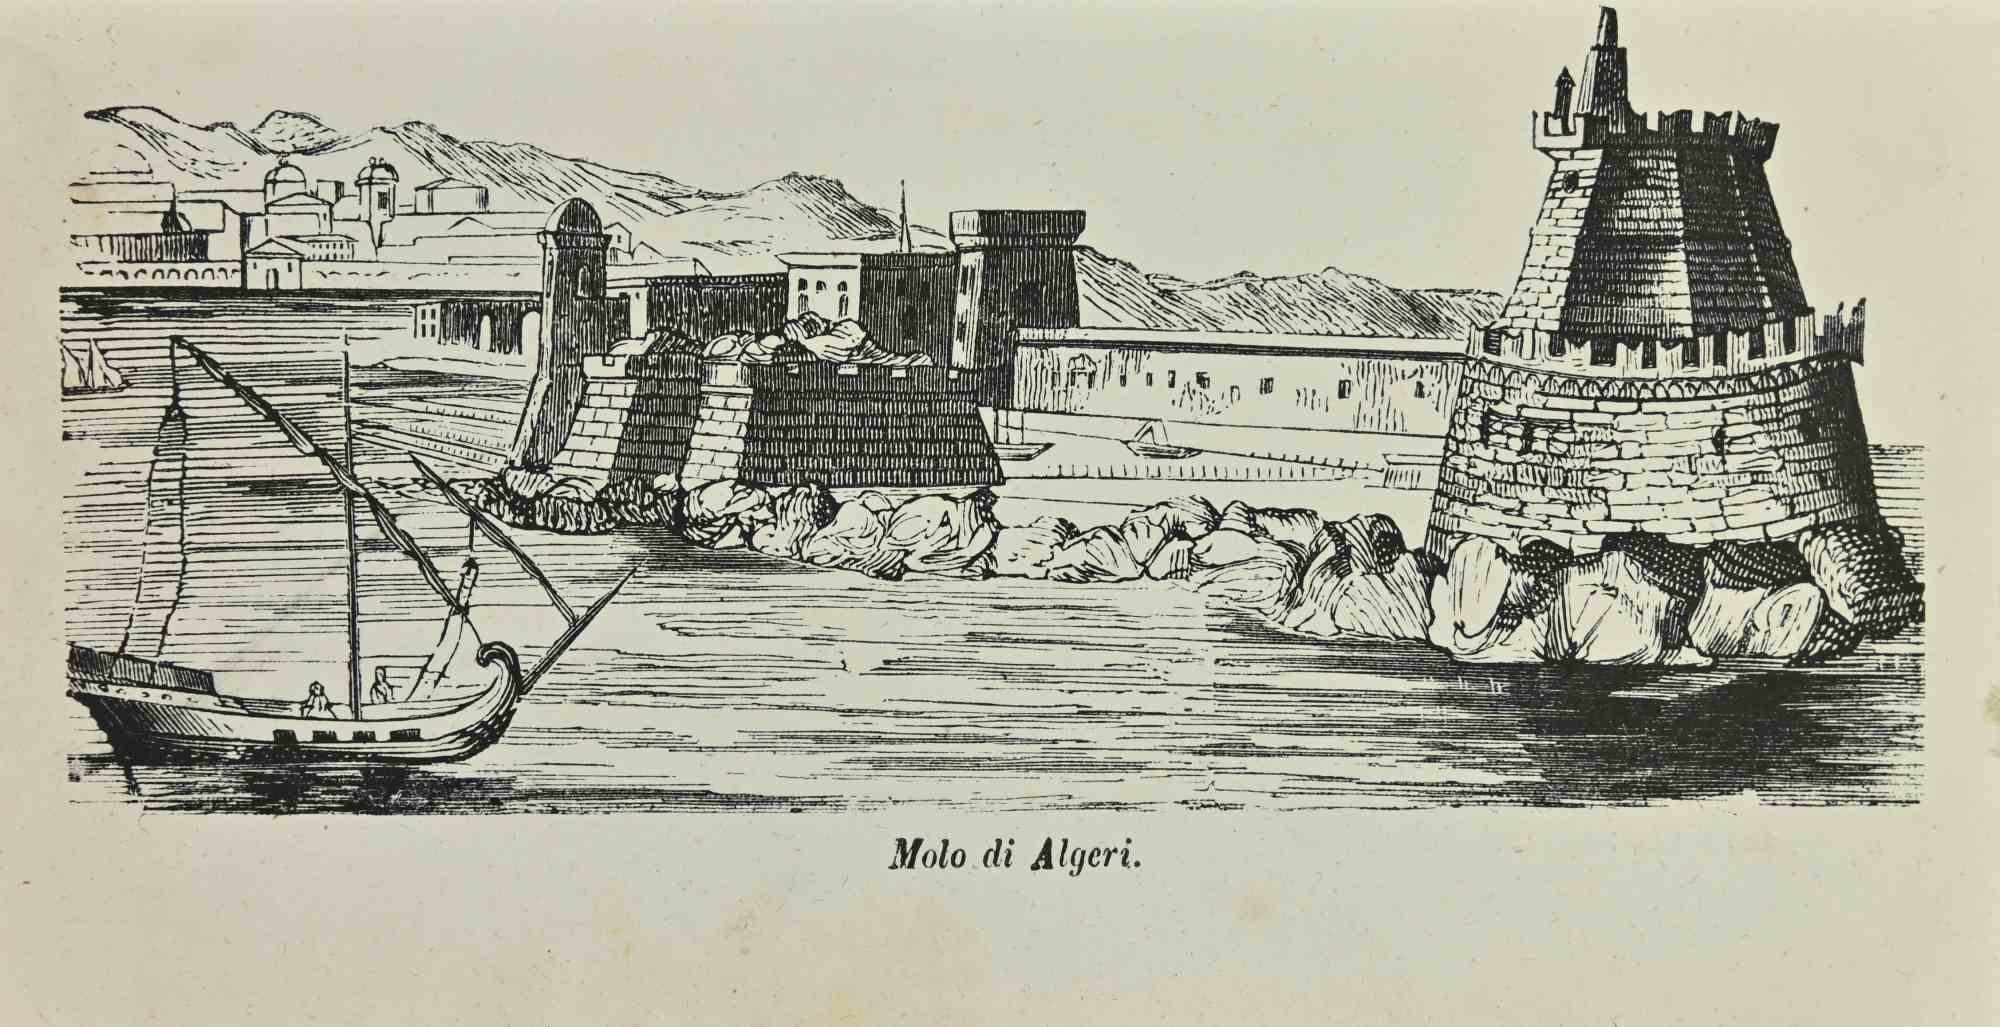 Pier in Algier ist eine Lithografie von Auguste Wahlen aus dem Jahr 1844.

Guter Zustand.

Im Zentrum des Kunstwerks steht der Originaltitel "Molo di Algeri".

Das Werk ist Teil der Suite Moeurs, usages et costumes de tous les peuples du monde,